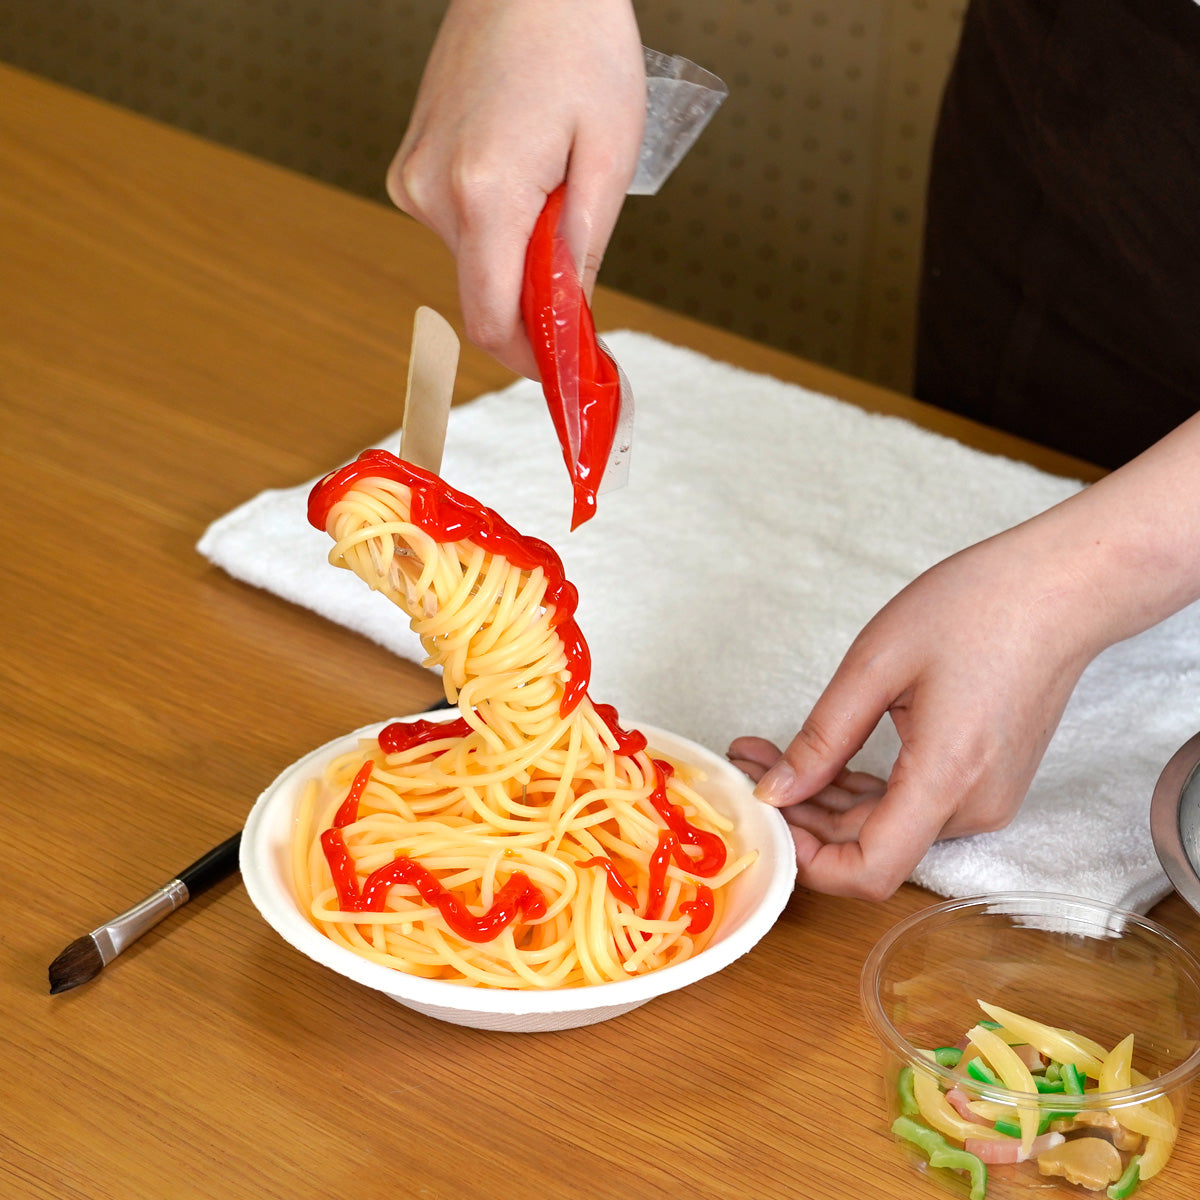 自分でつくる食品サンプルキット「さんぷるんvol.1 ナポリタン」の製作工程画像です。ゼラチンでできたトマトソースをかけています。